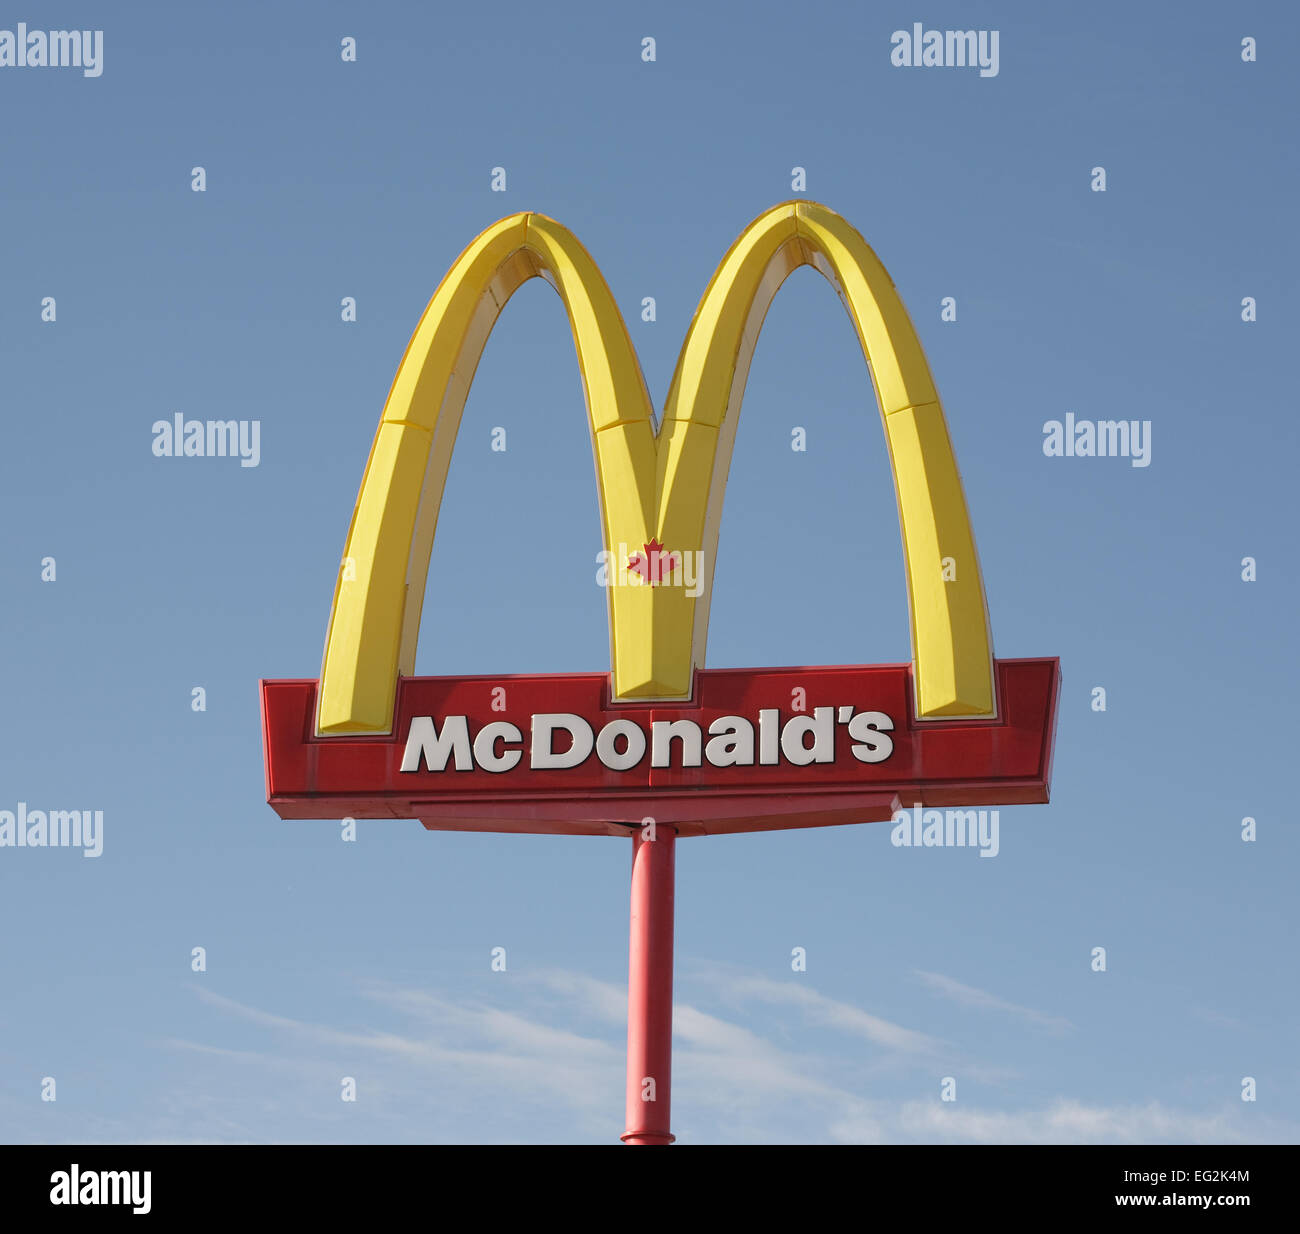 McDonalds Corp